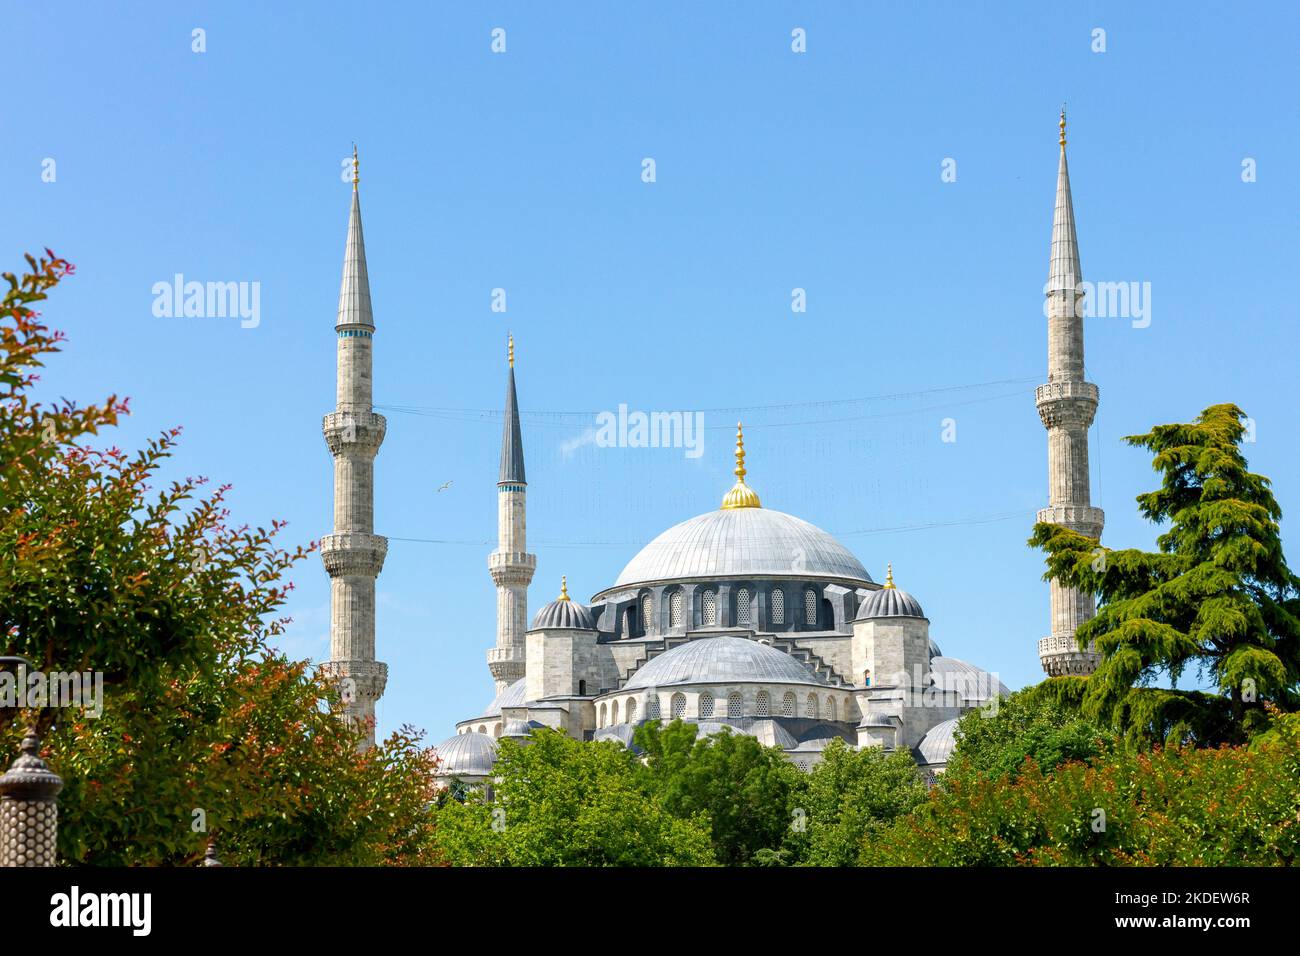 Mosquée bleue, vue extérieure de la célèbre mosquée du Sultan Ahmed, une mosquée impériale de l'époque ottomane à Istanbul, Turquie. C'est un site classé au patrimoine mondial de l'UNESCO. Banque D'Images